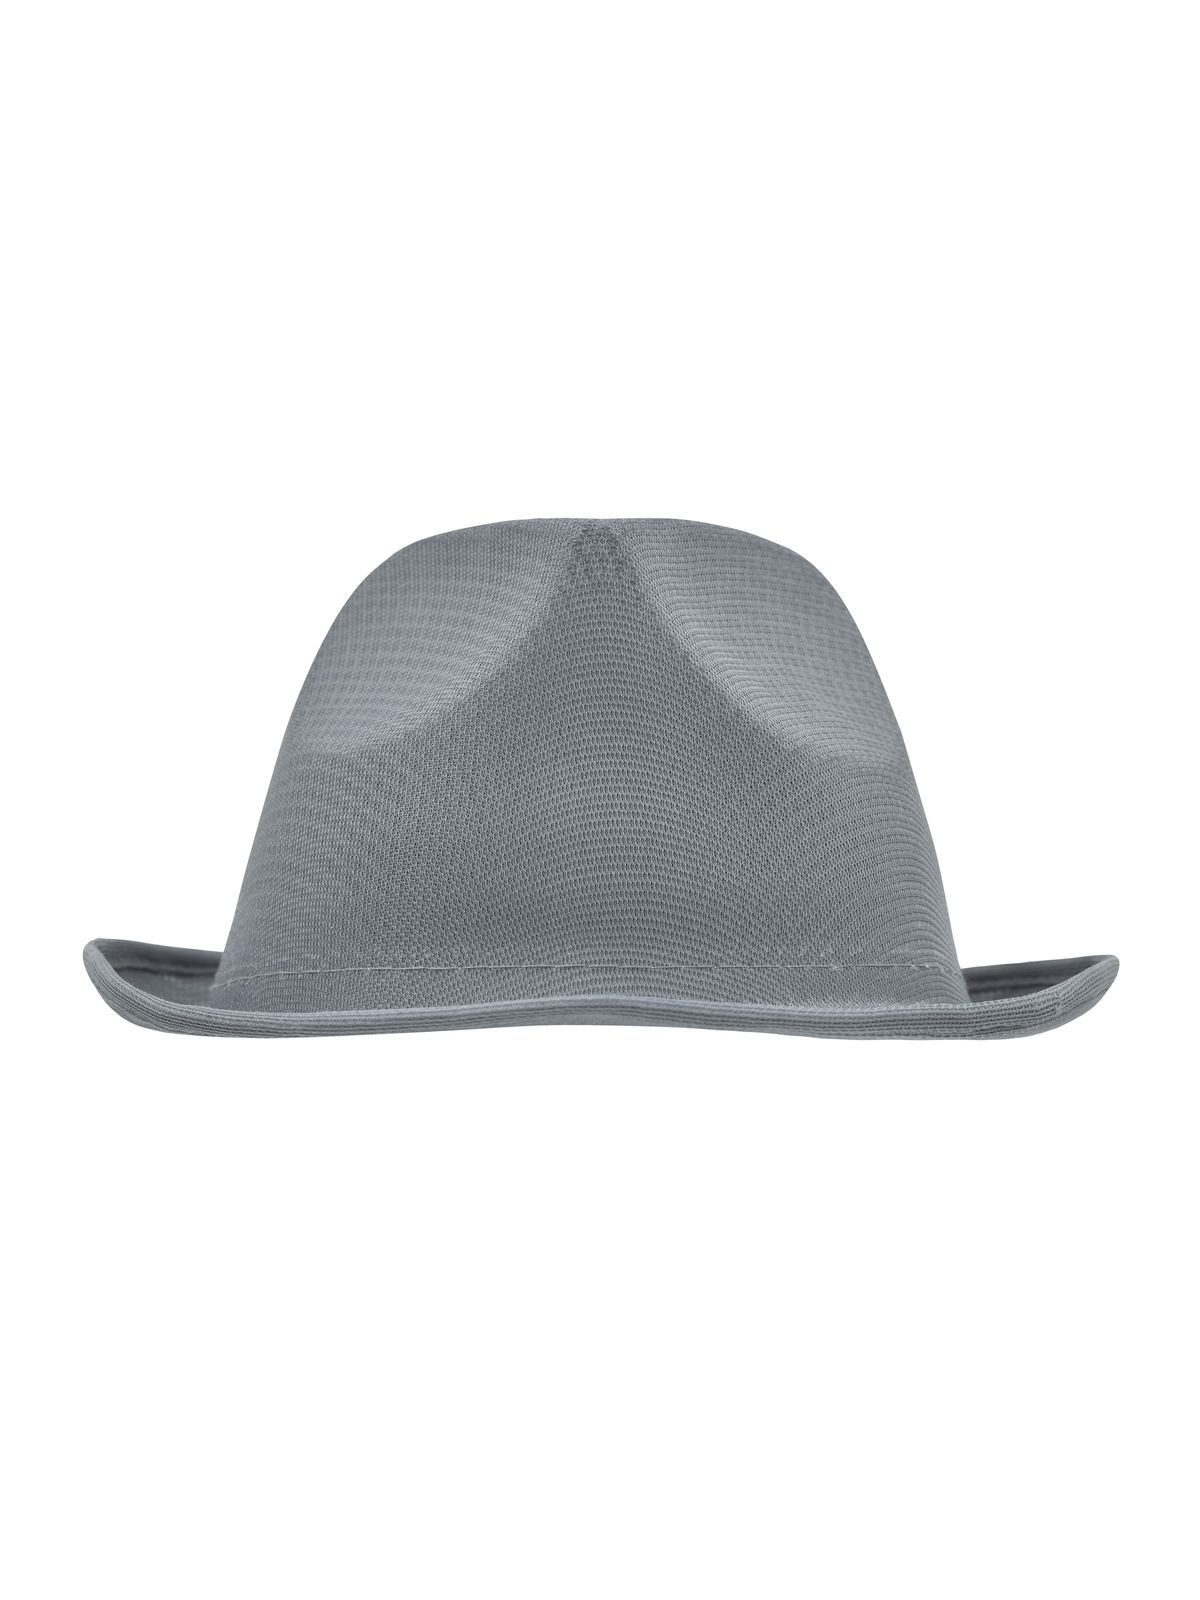 promotion-hat-grey.webp